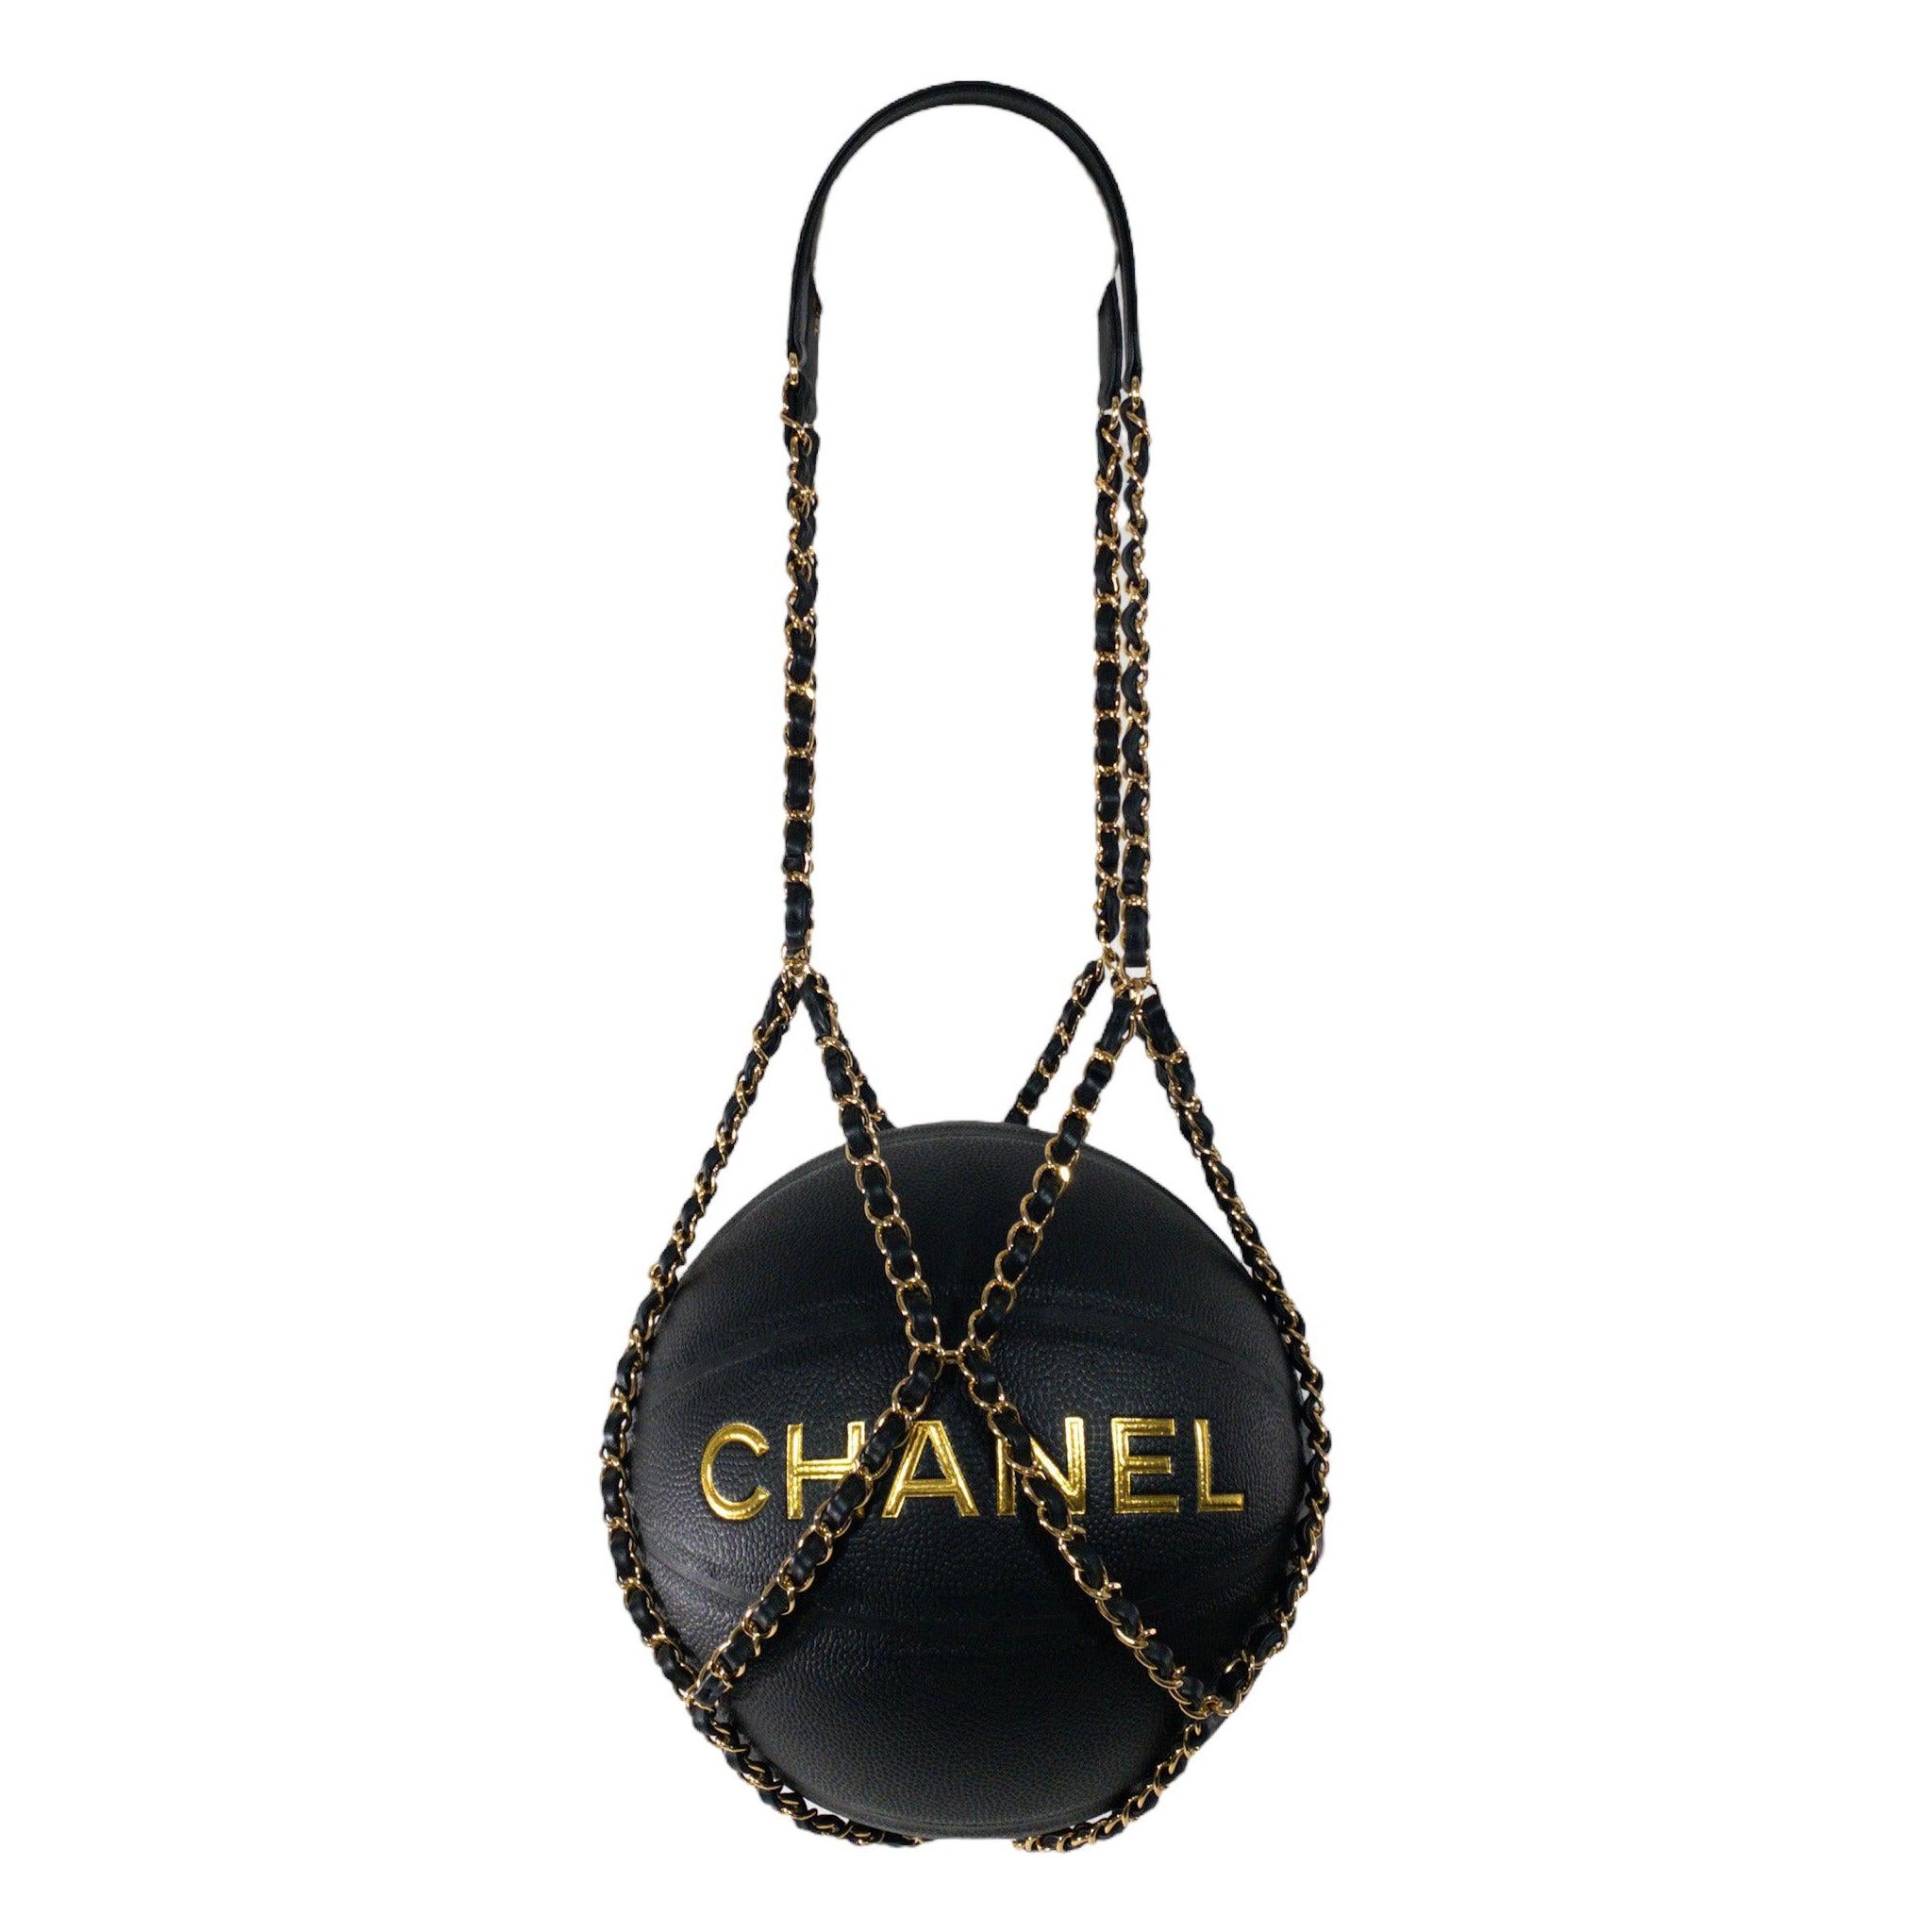 Édition limitée basket-ball avec harnais en chaîne de Chanel, 2019